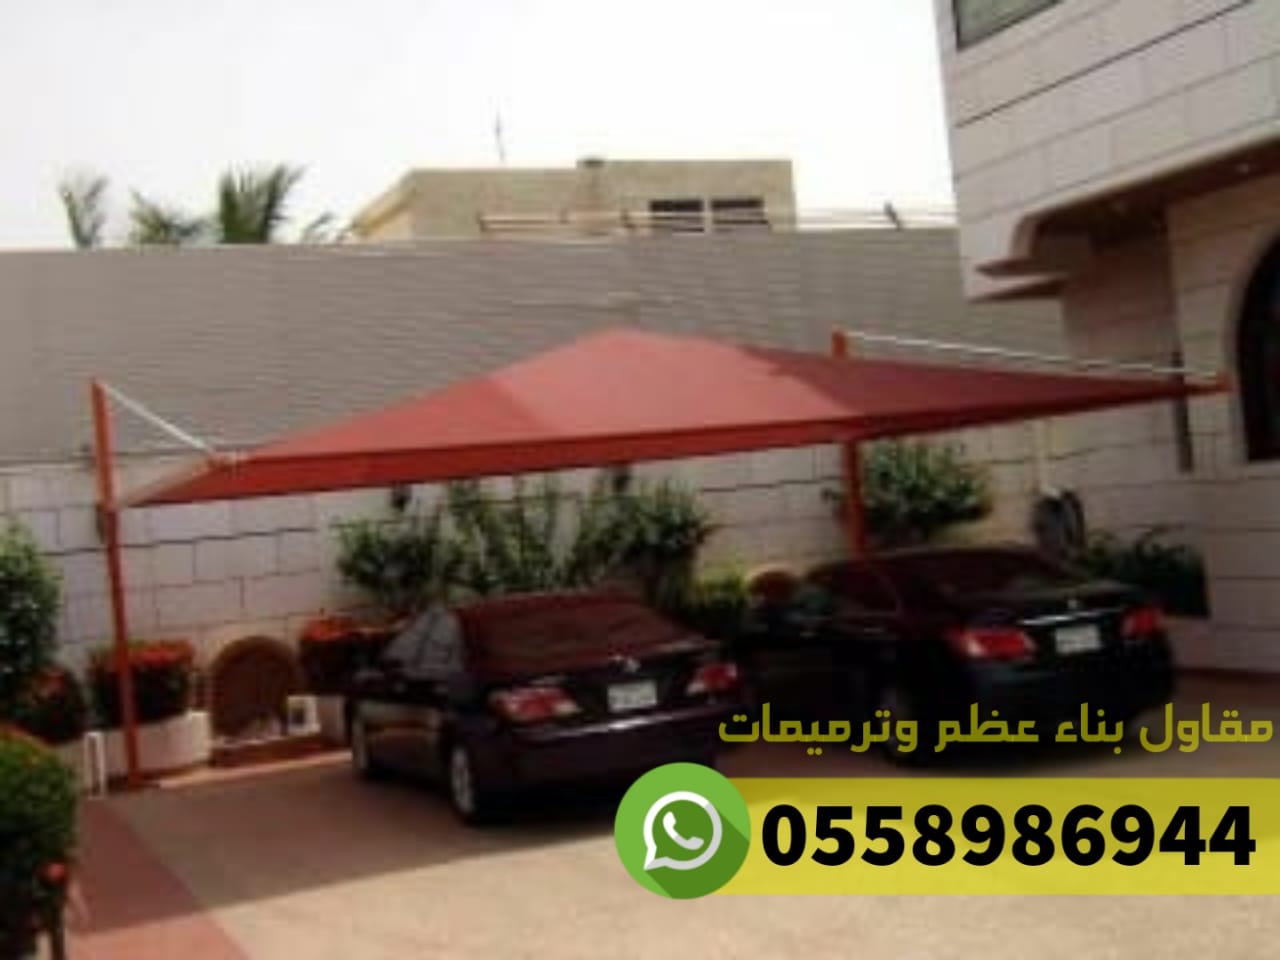 مؤسسة تركيب مظلات للسيارات جدة مكة الطائف, 0558986944  P_2536ngge82